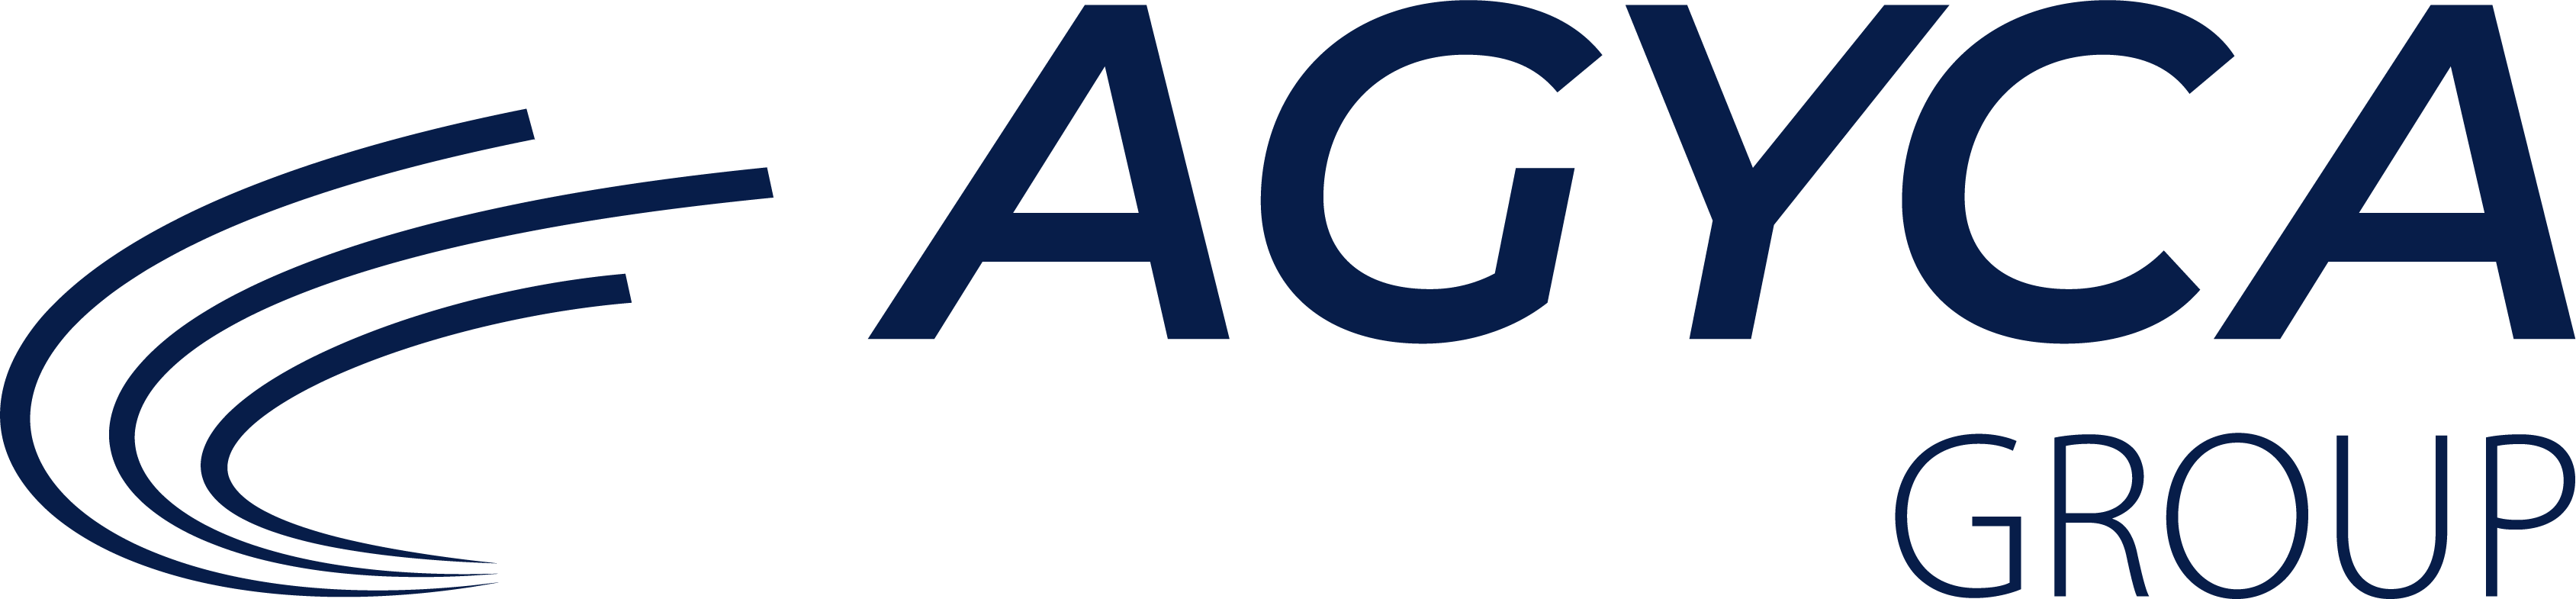 AGYCA Group